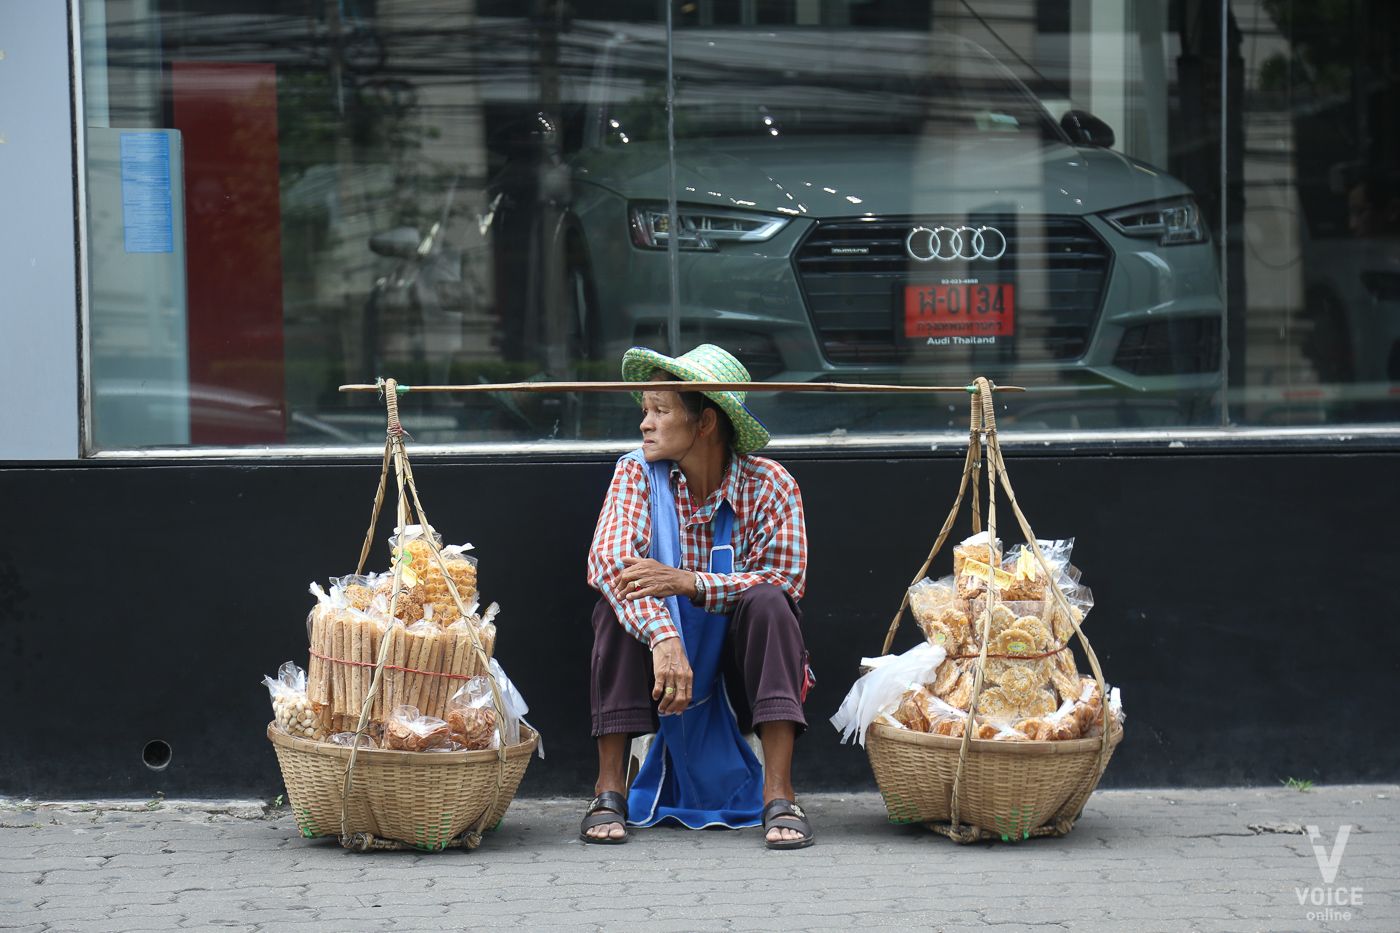 เศรษฐกิจ-ความเหลื่อมล้ำ-สวัสดิการ-คนจน-คนไทย-หาบเร่-แรงงาน-ชนชั้นล่าง